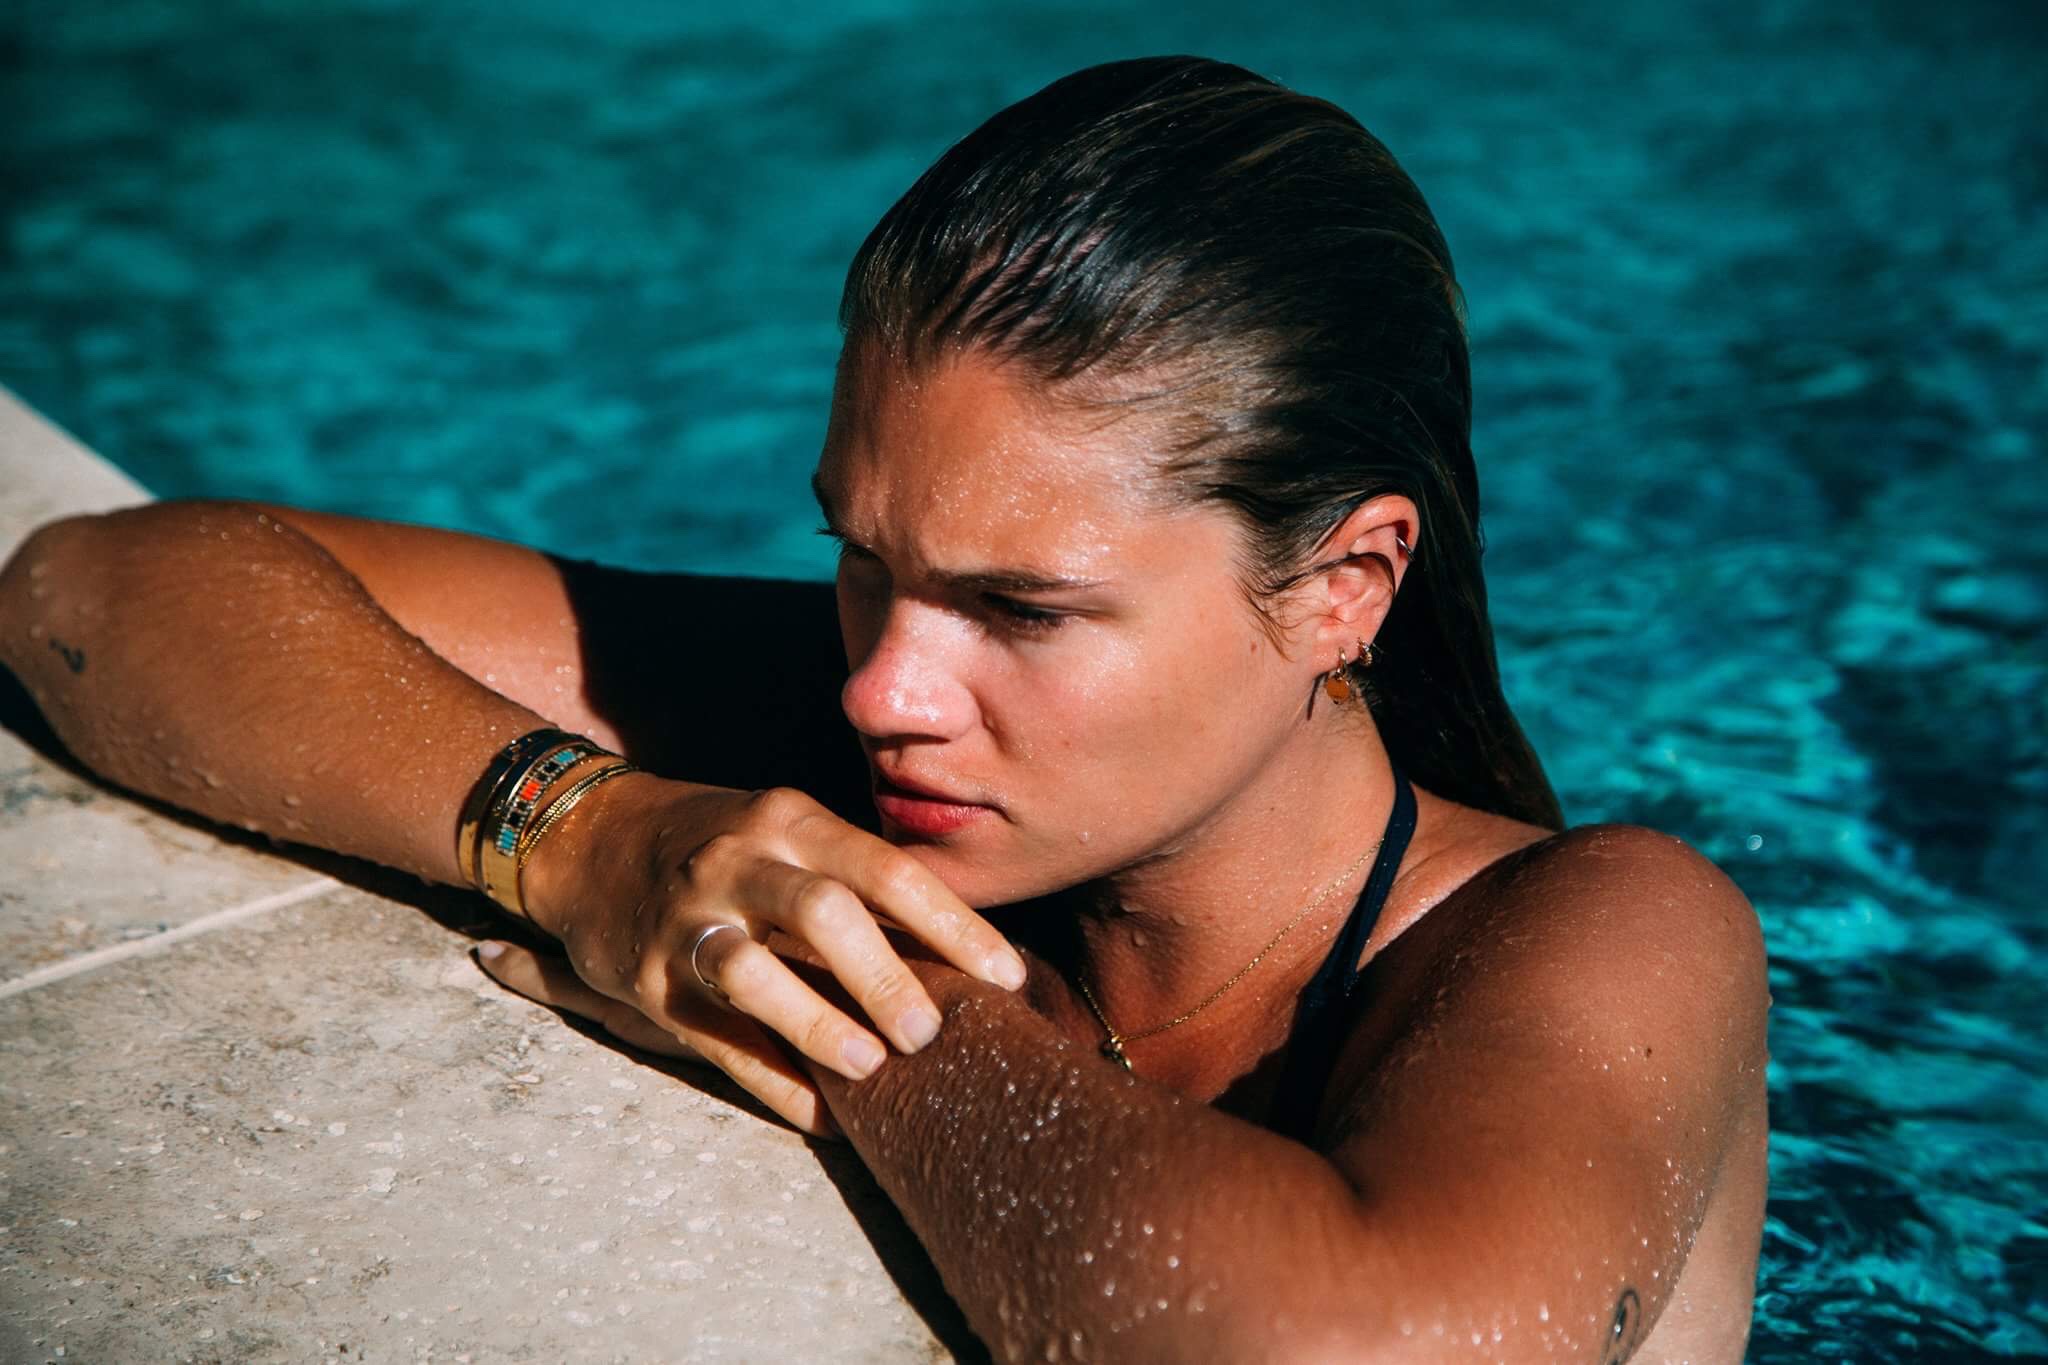 People 2048x1365 Eva Biechy model Vincent Legendre women closeup swimming pool water in water tattoo bracelets earring water drops wet body